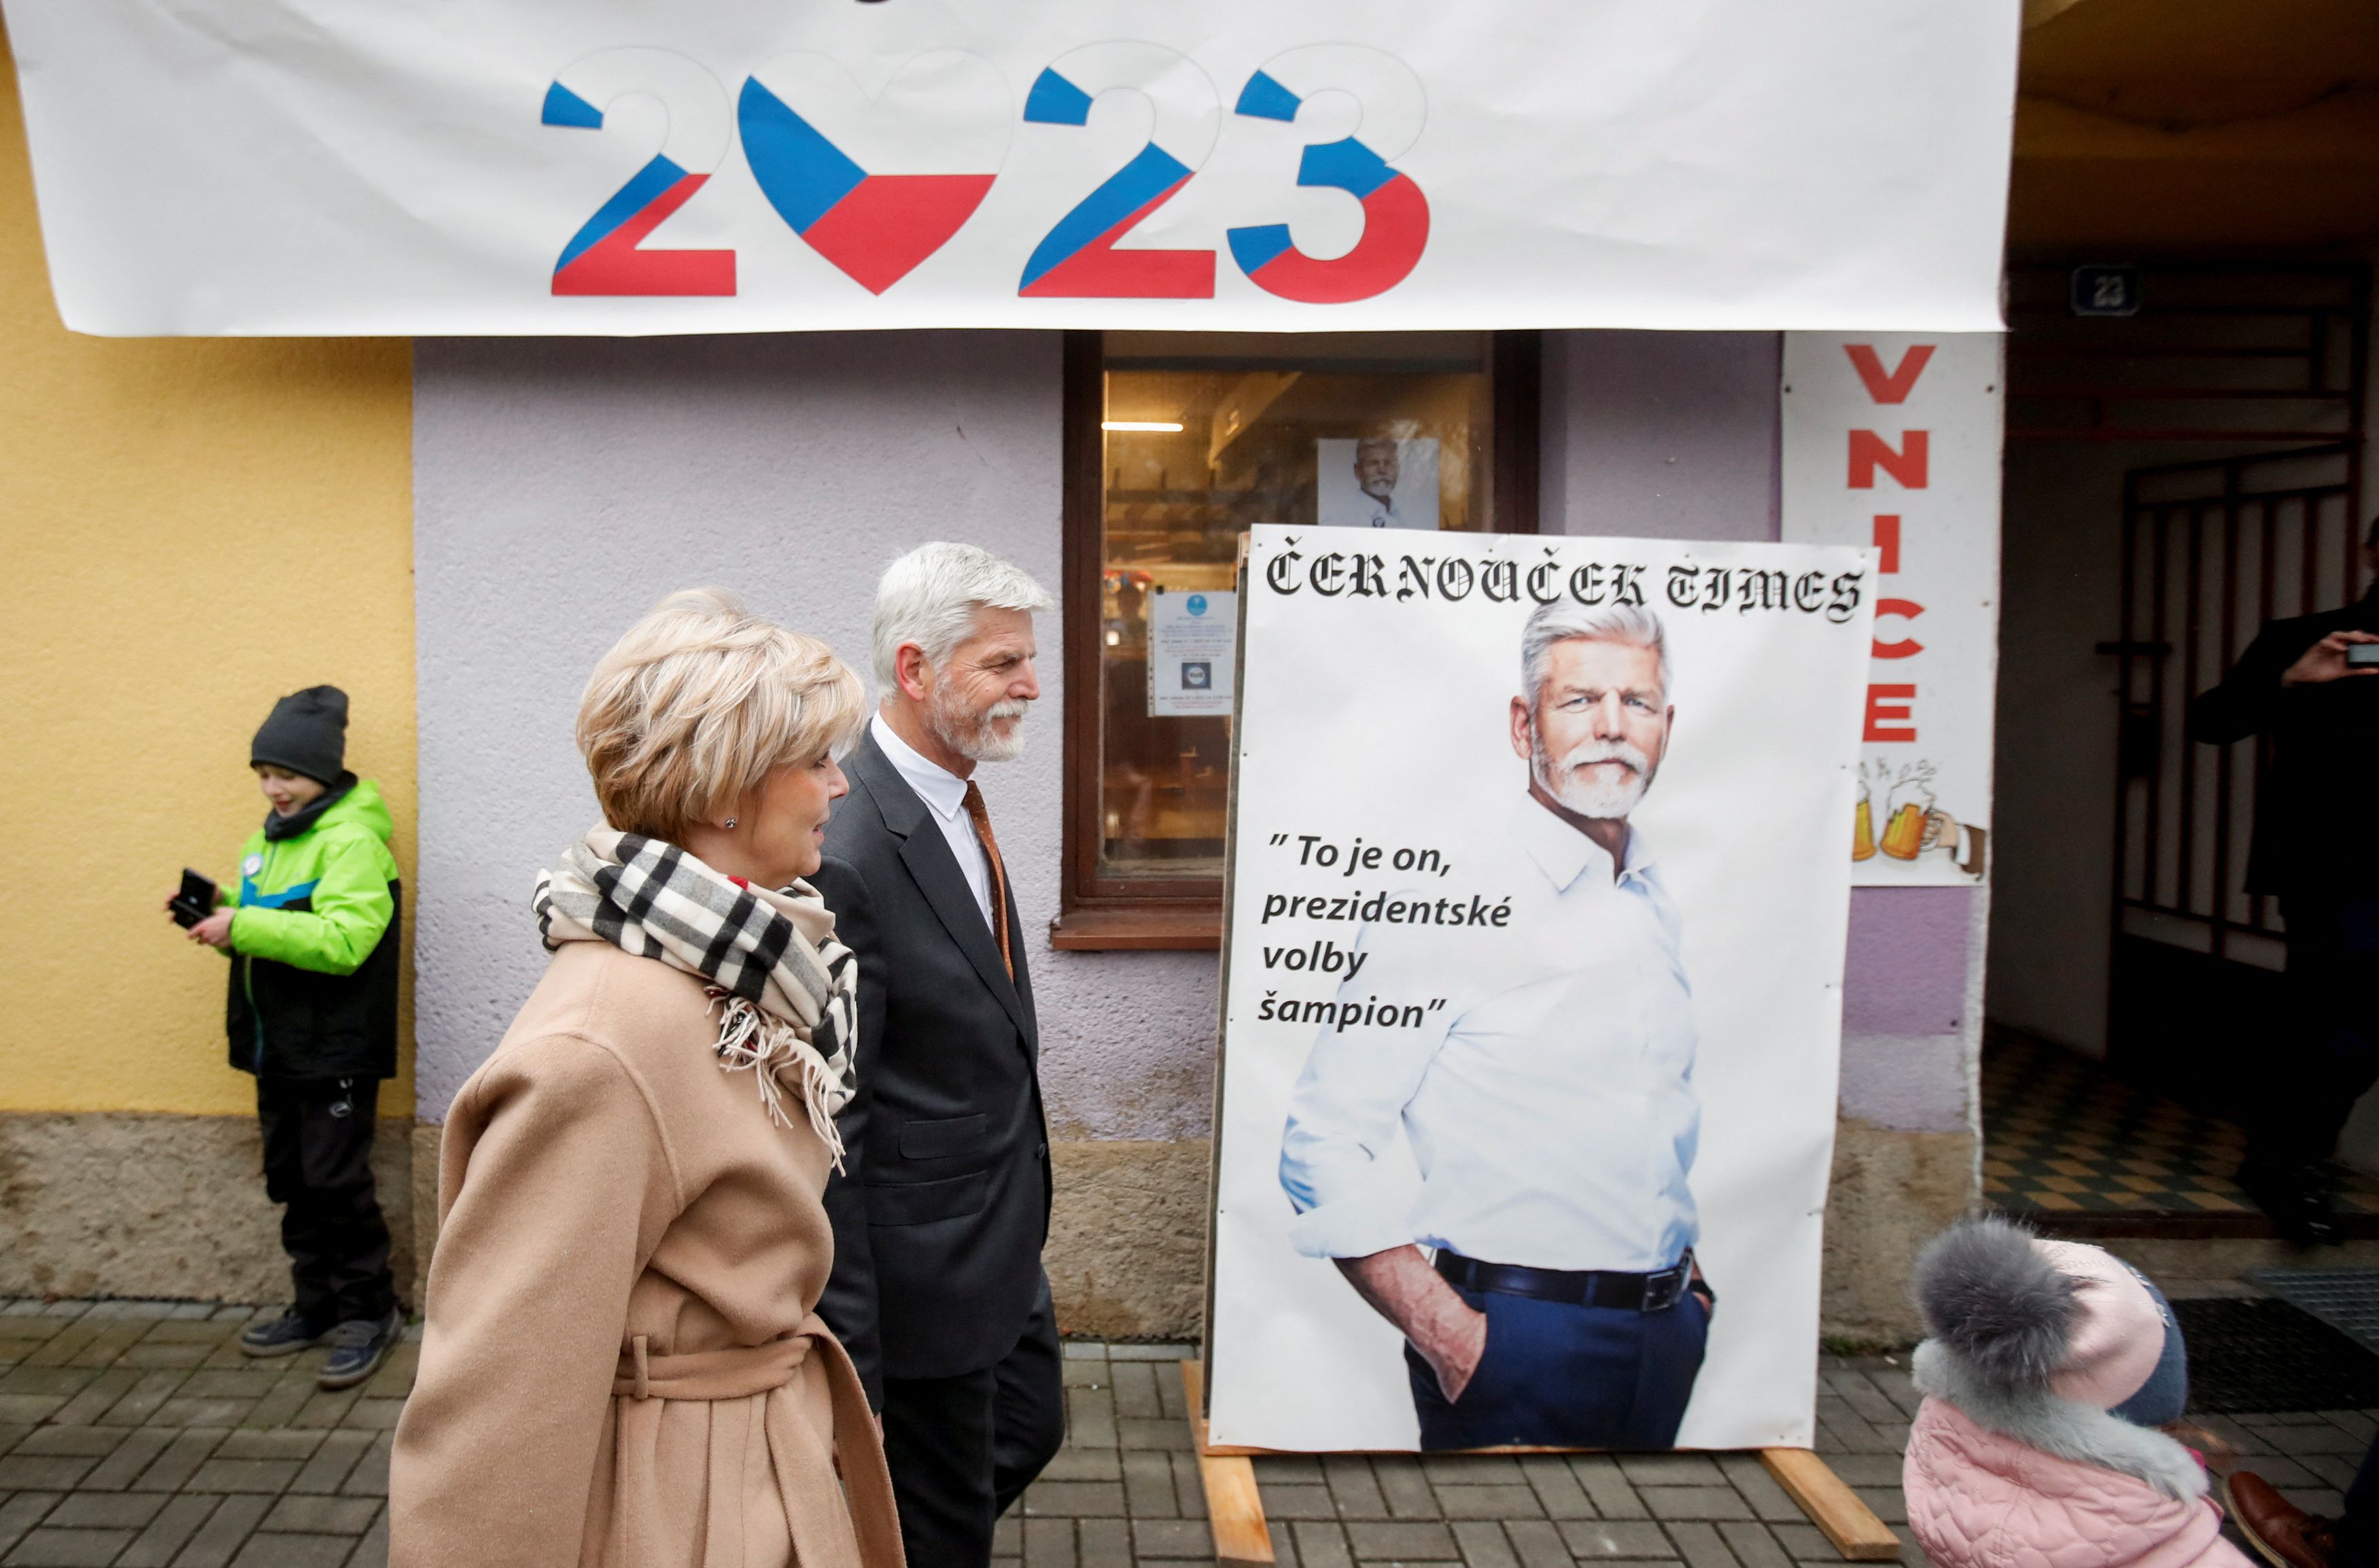 Τσεχία: Διεξάγεται ο δεύτερος γύρος των προεδρικών εκλογών - Ποιος είναι το φαβορί